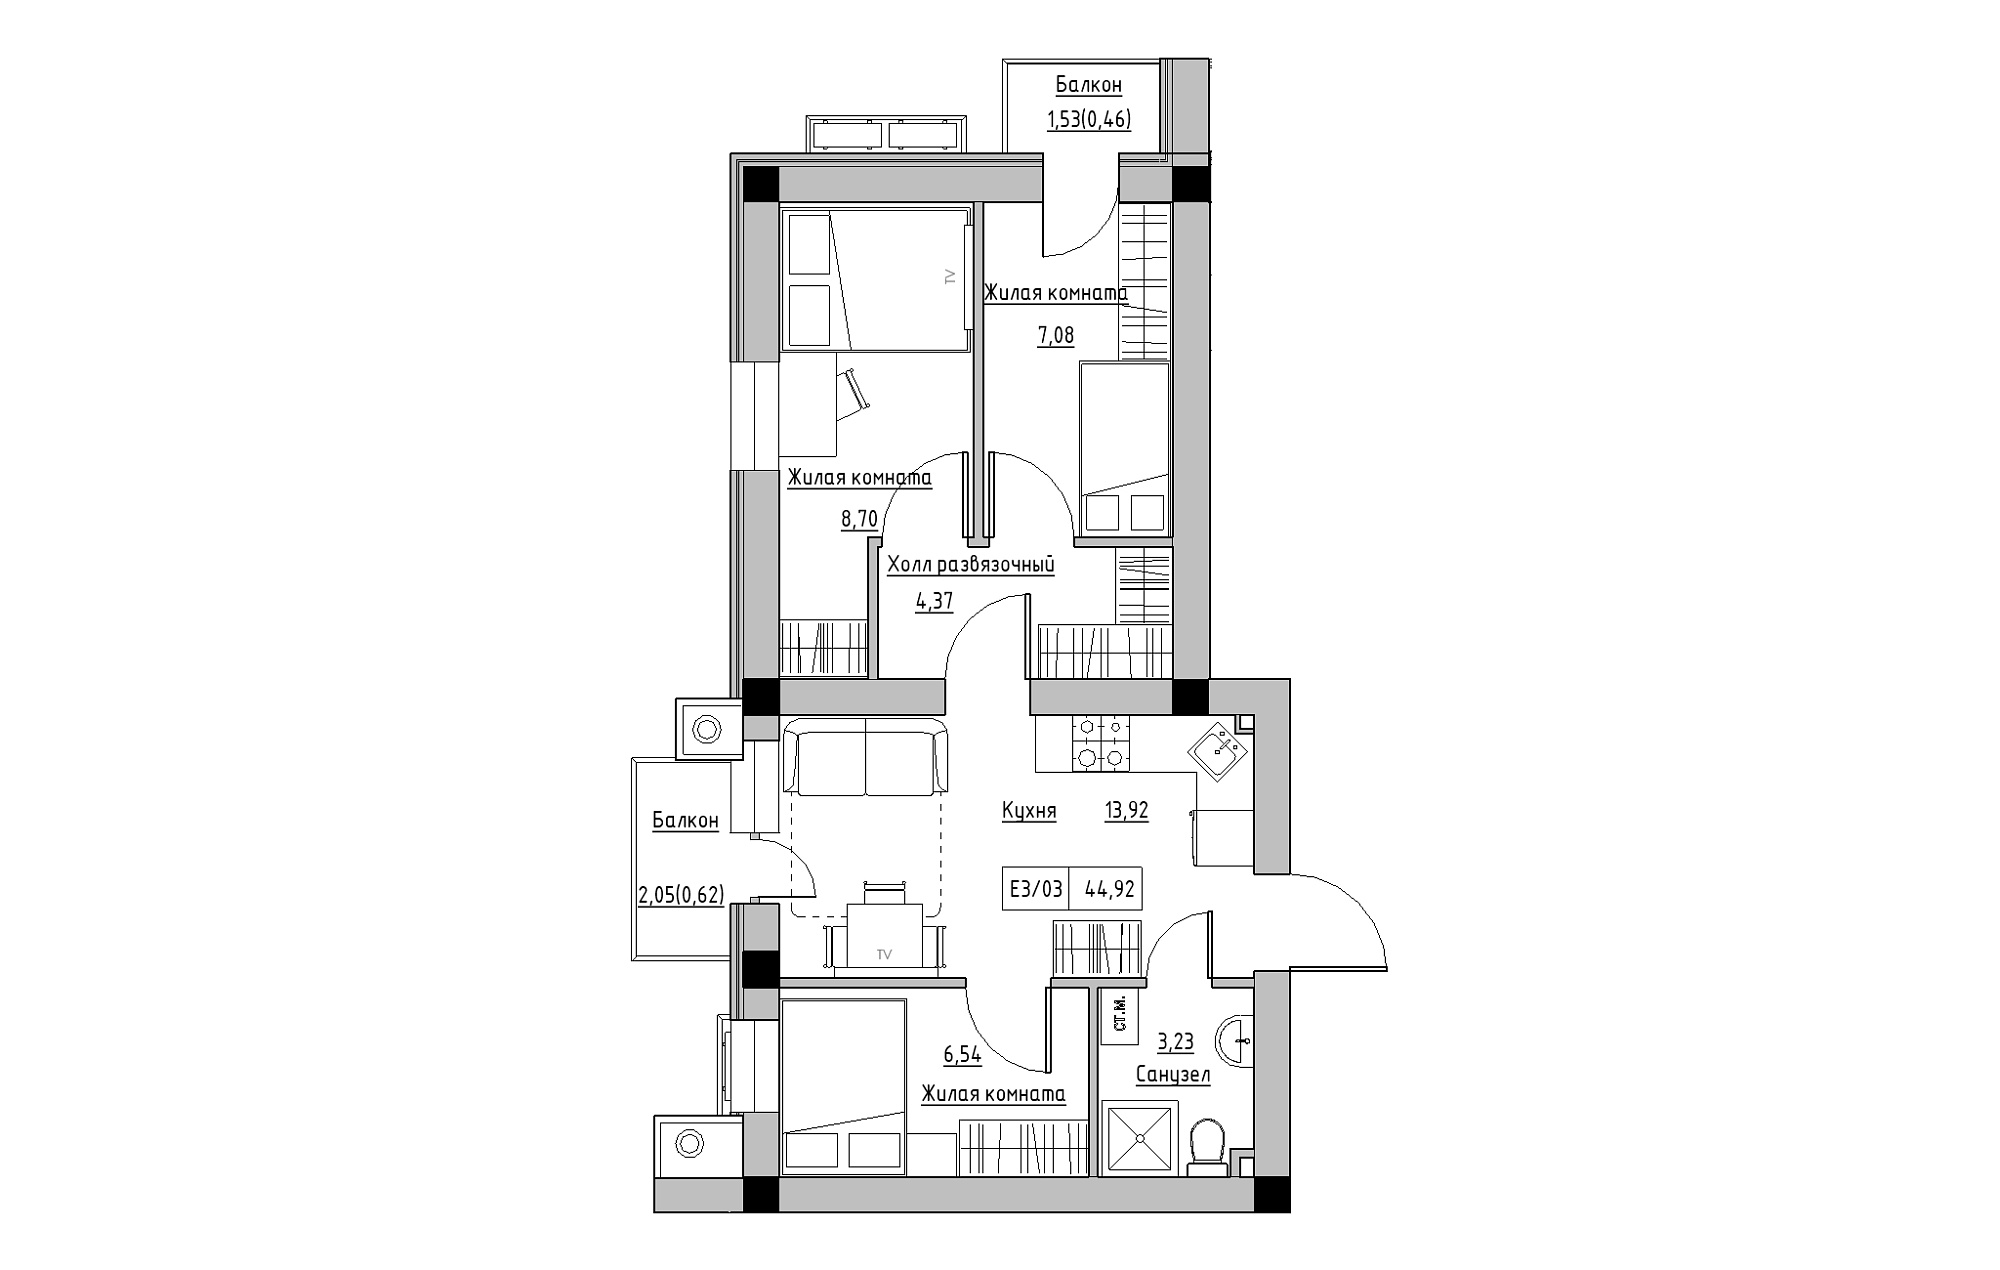 Планування 3-к квартира площею 44.92м2, KS-013-05/0006.